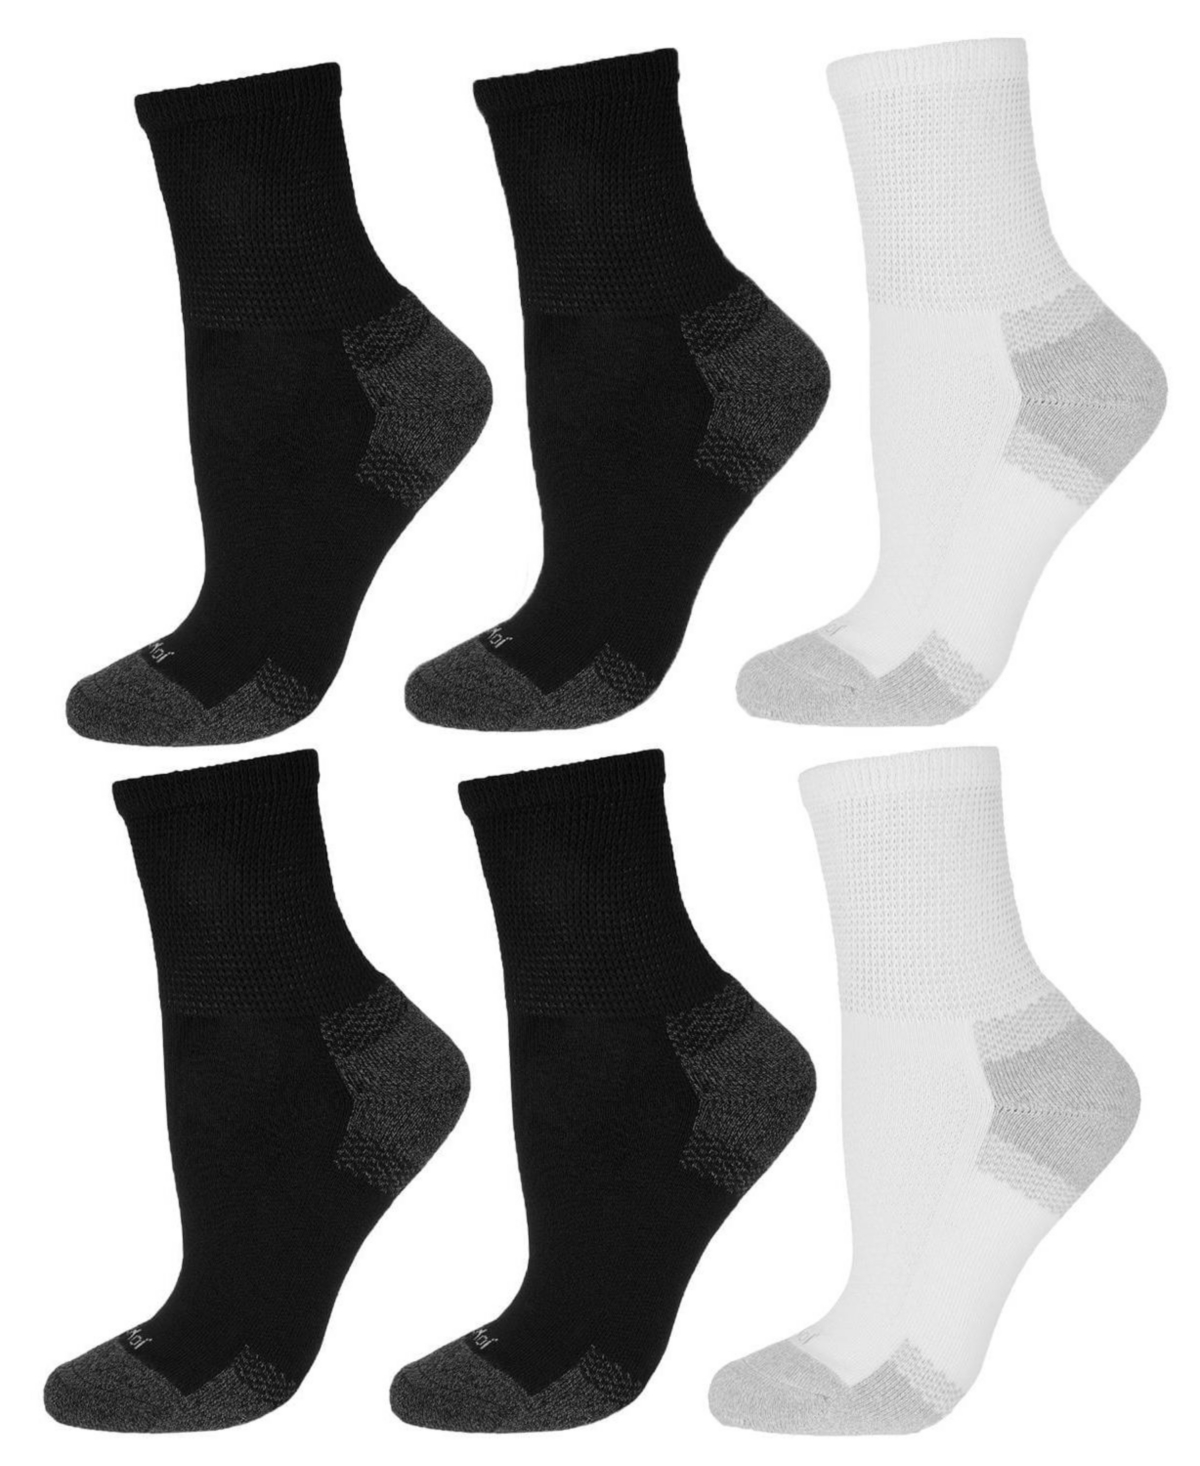 Men's Diabetic Half Cushion Quarter 6 Pair Pack Socks - Diabetic-Black-Black-white